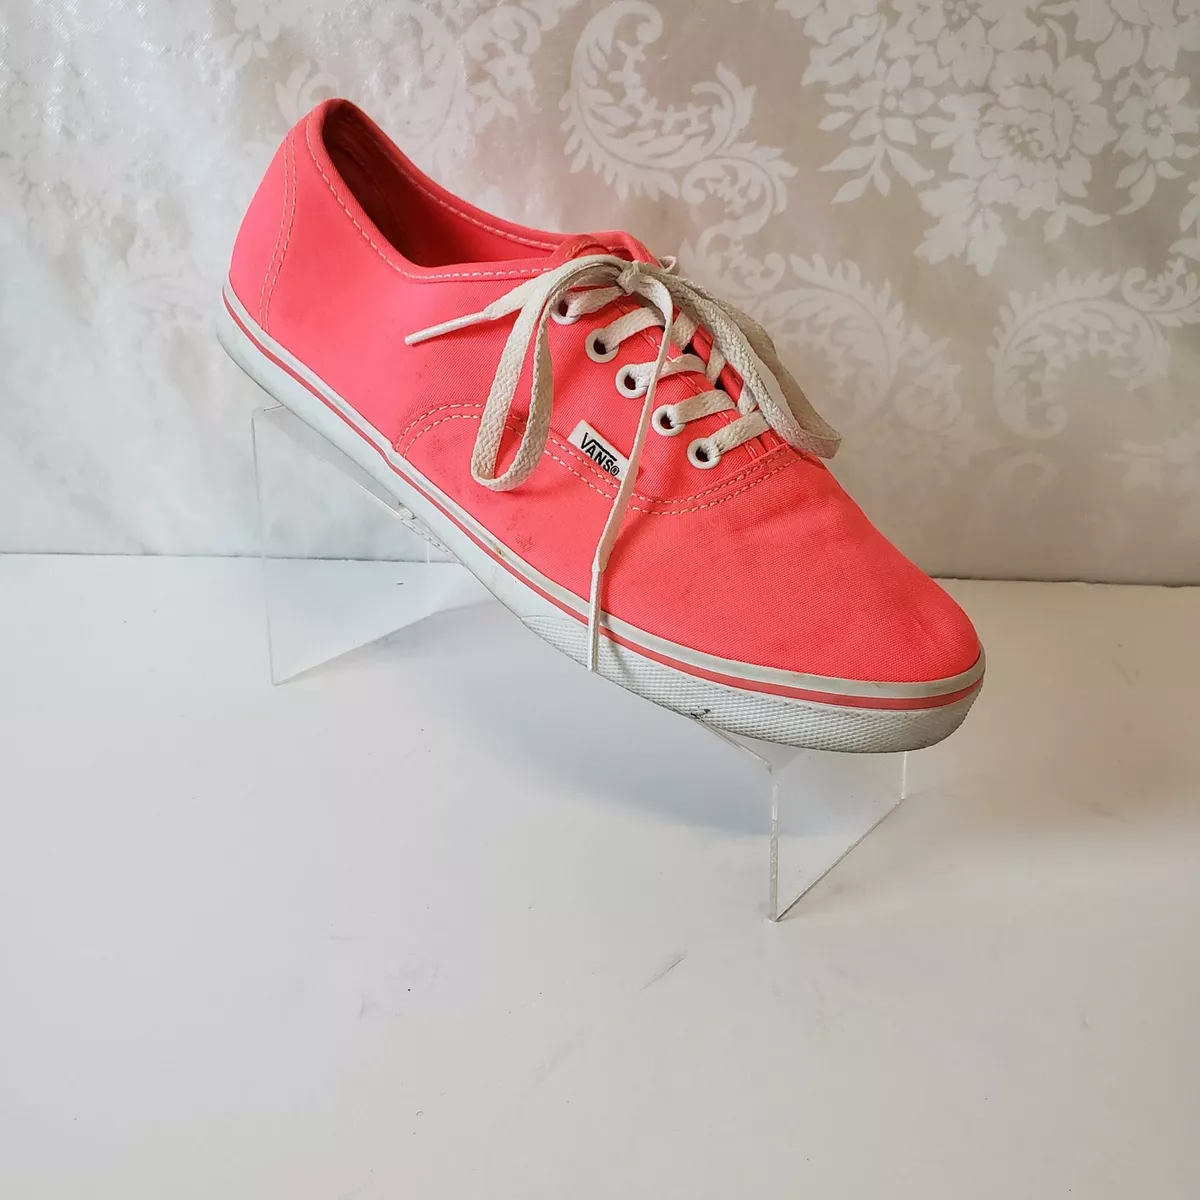 Vans Lo Pro Shoes Size 7.5M Lace Up Canvas Neon Pink eBay